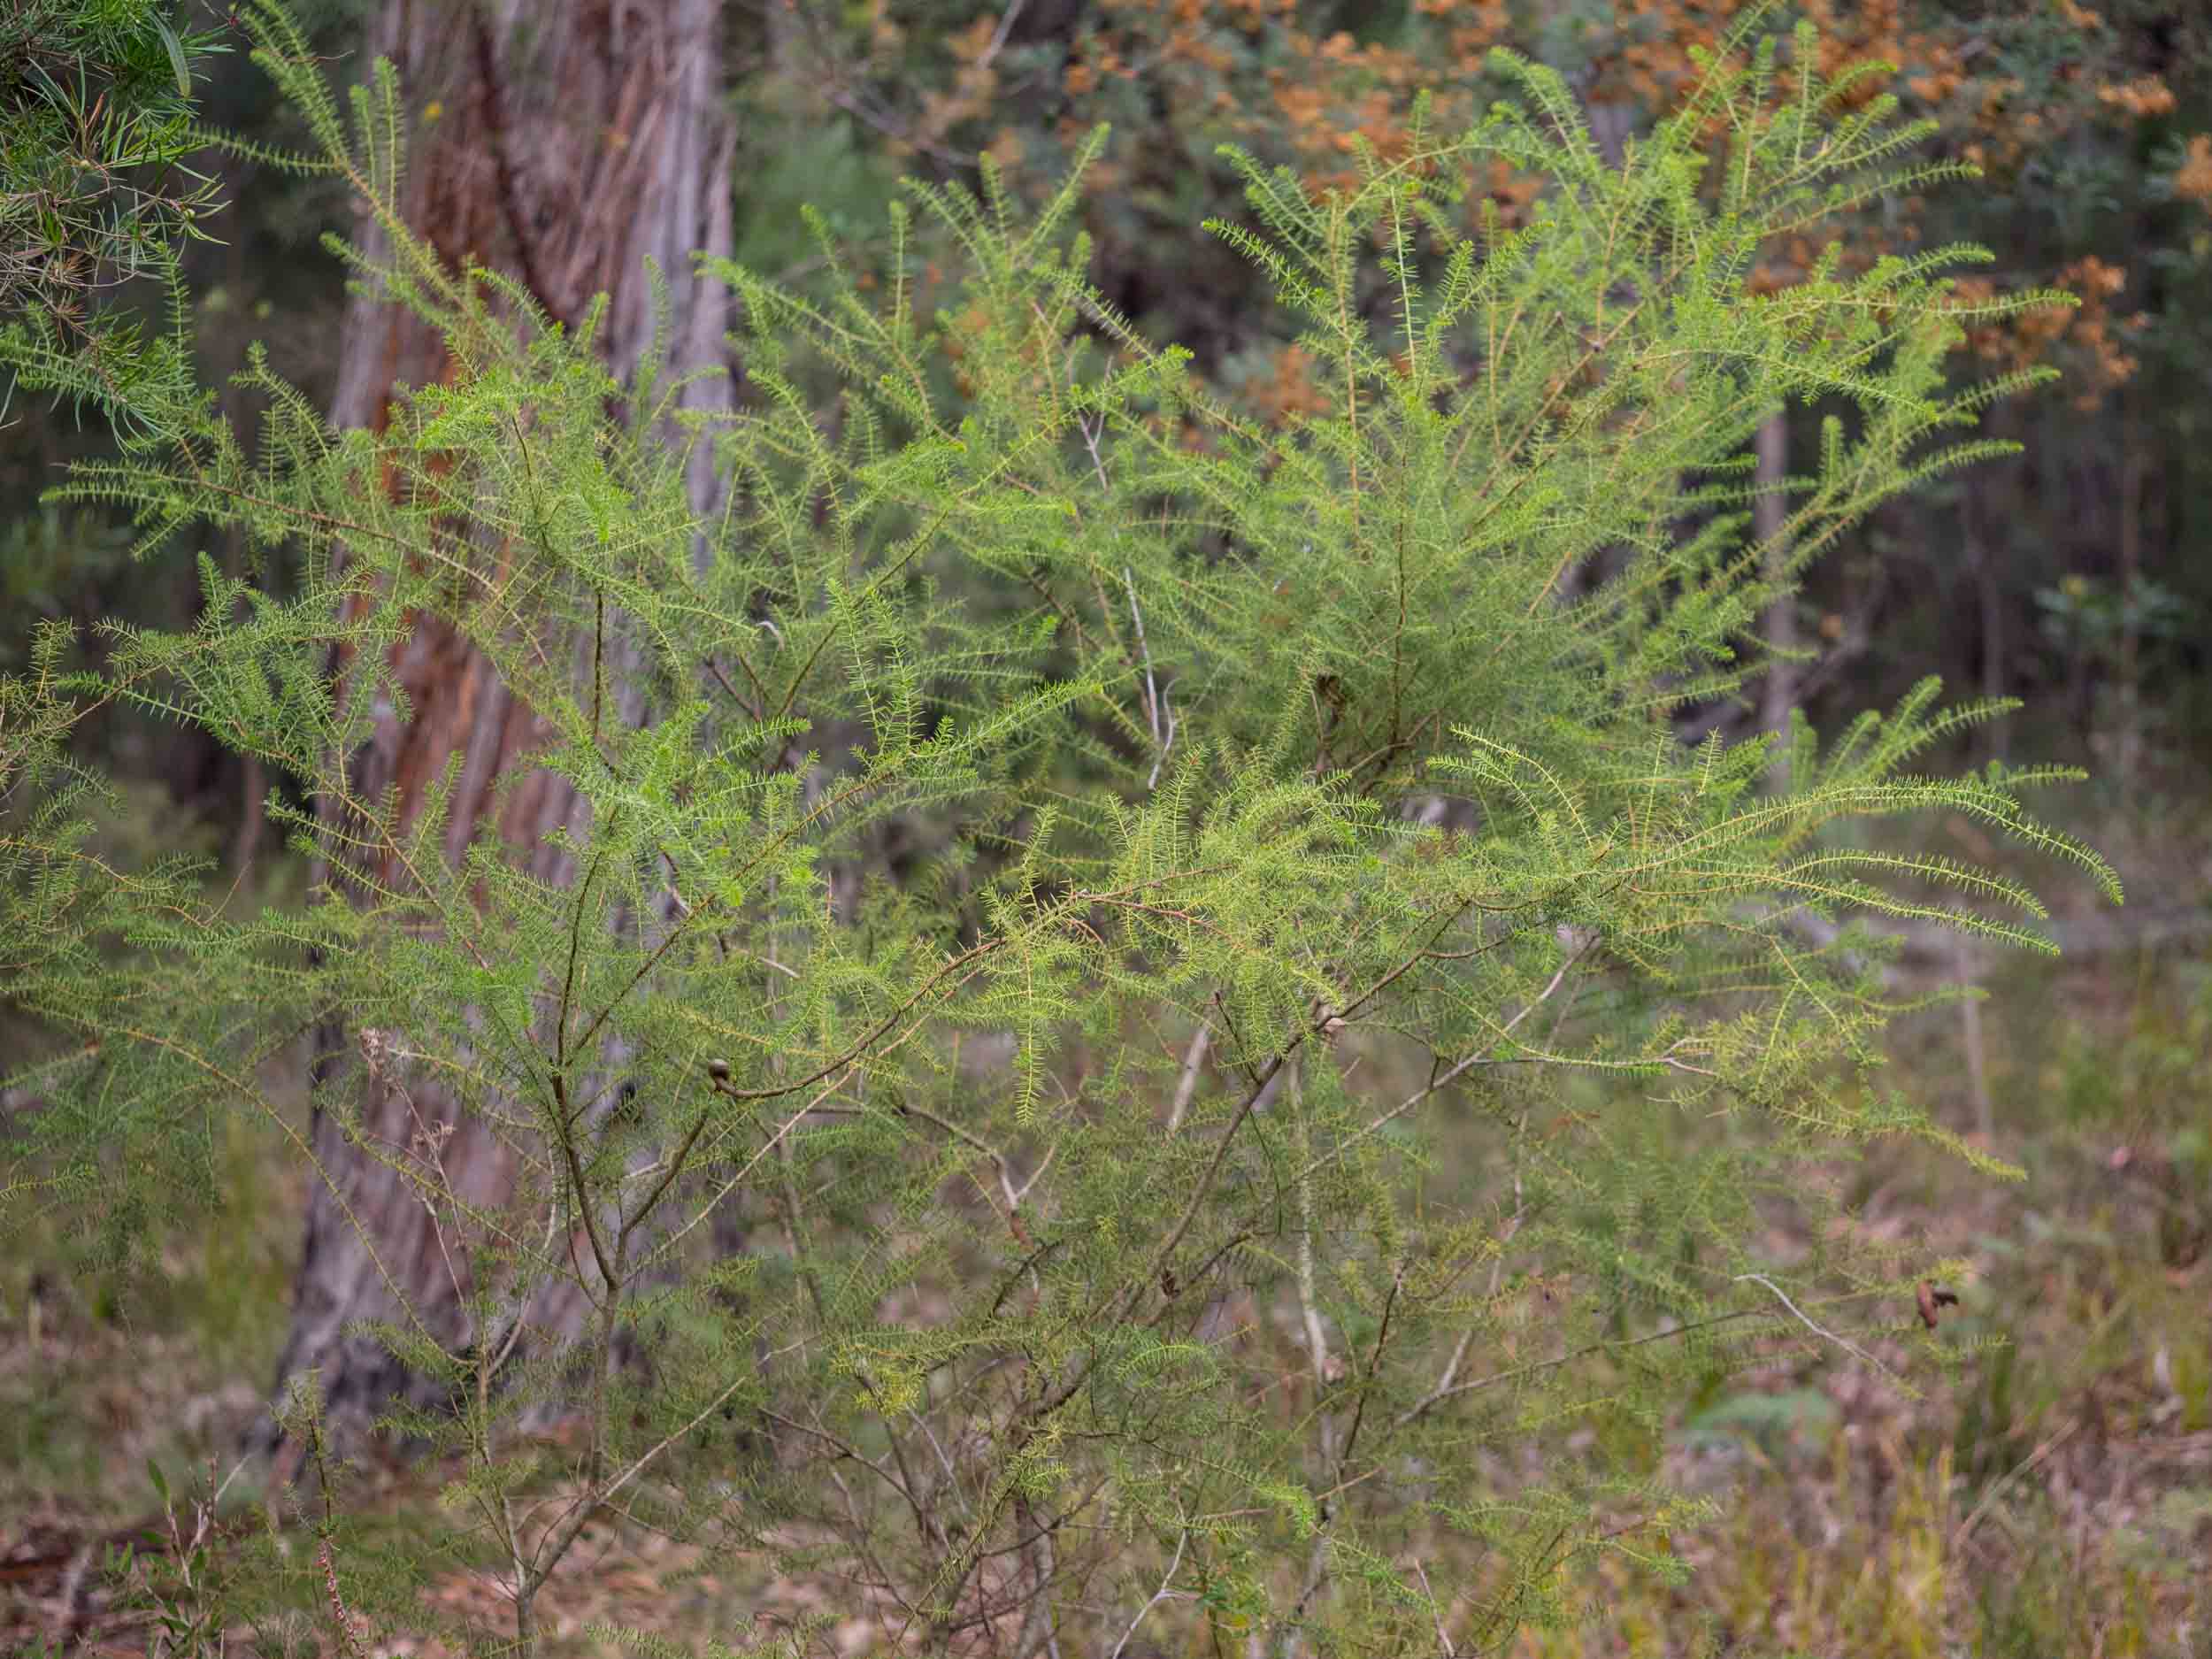  An  A. verticillata  bush about 1m tall. 